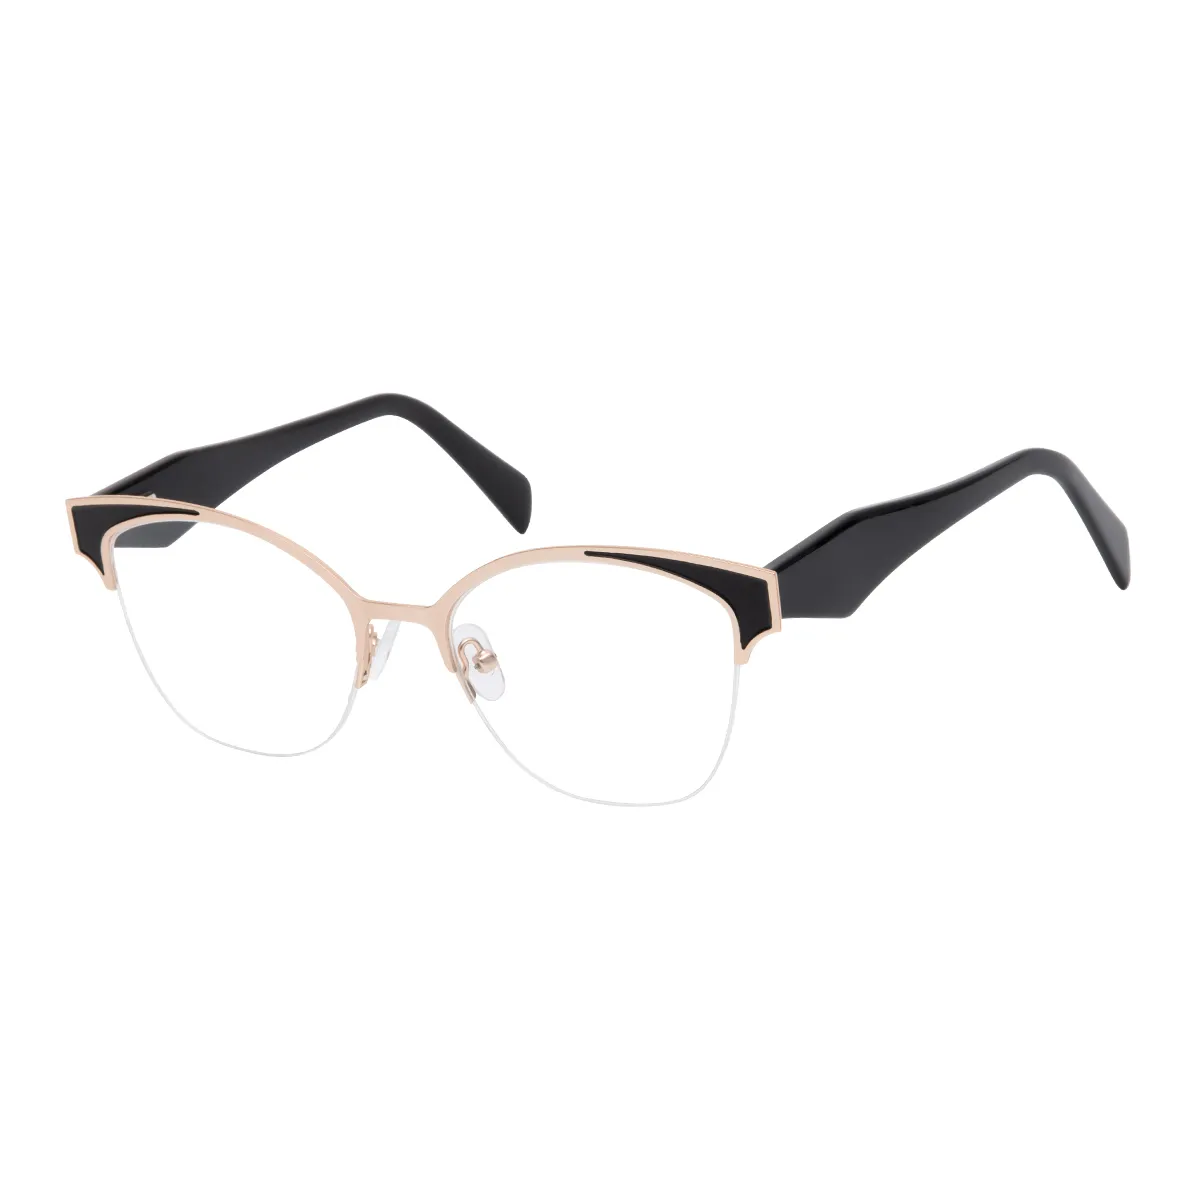 Carlie - Cat-eye Black Glasses for Women